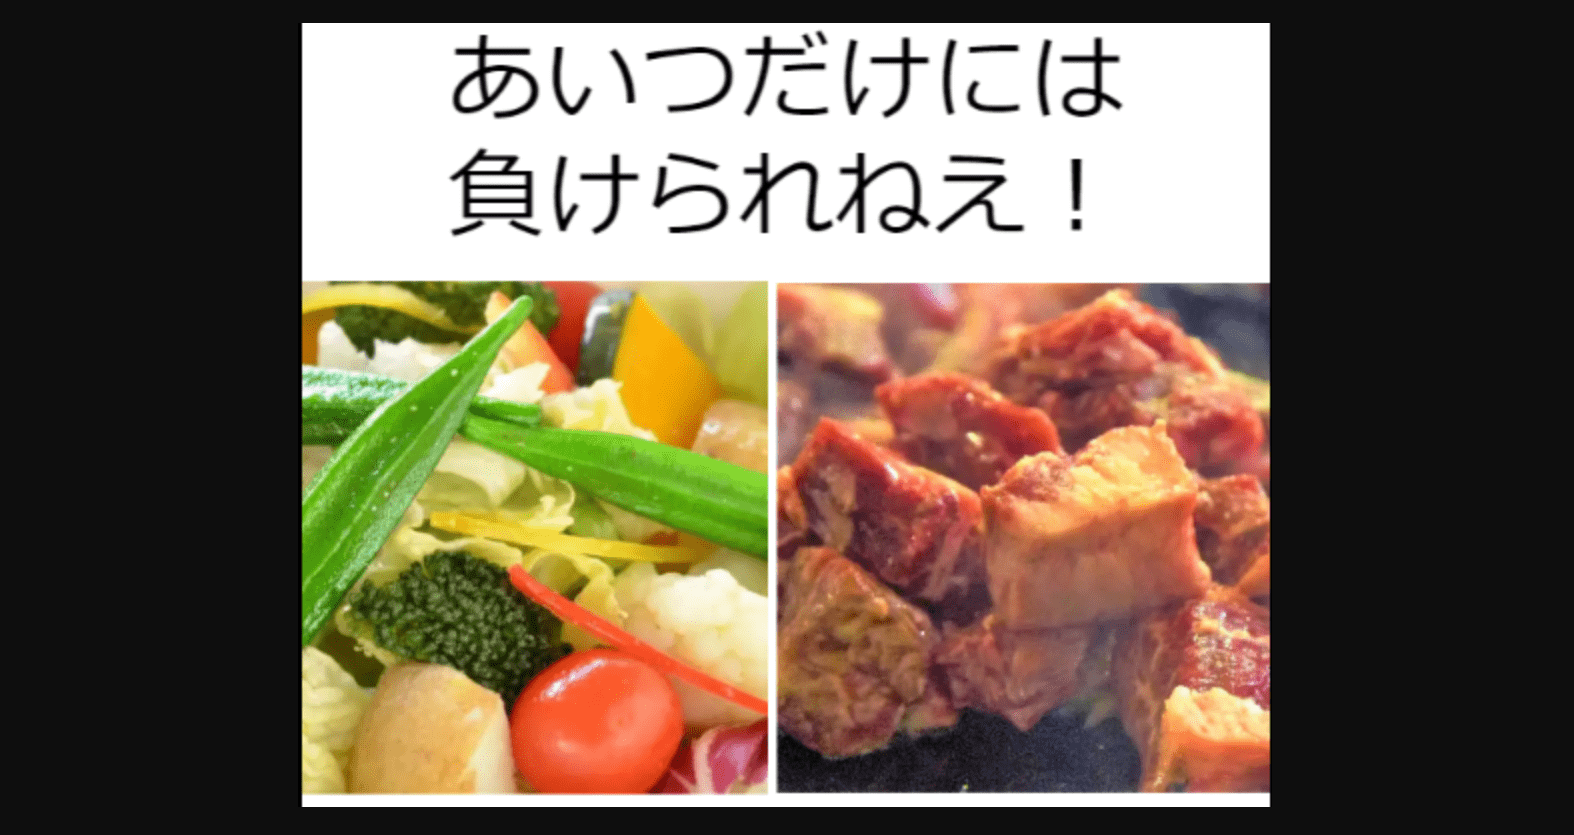 【クリックゲー】サラダ vs 肉料理